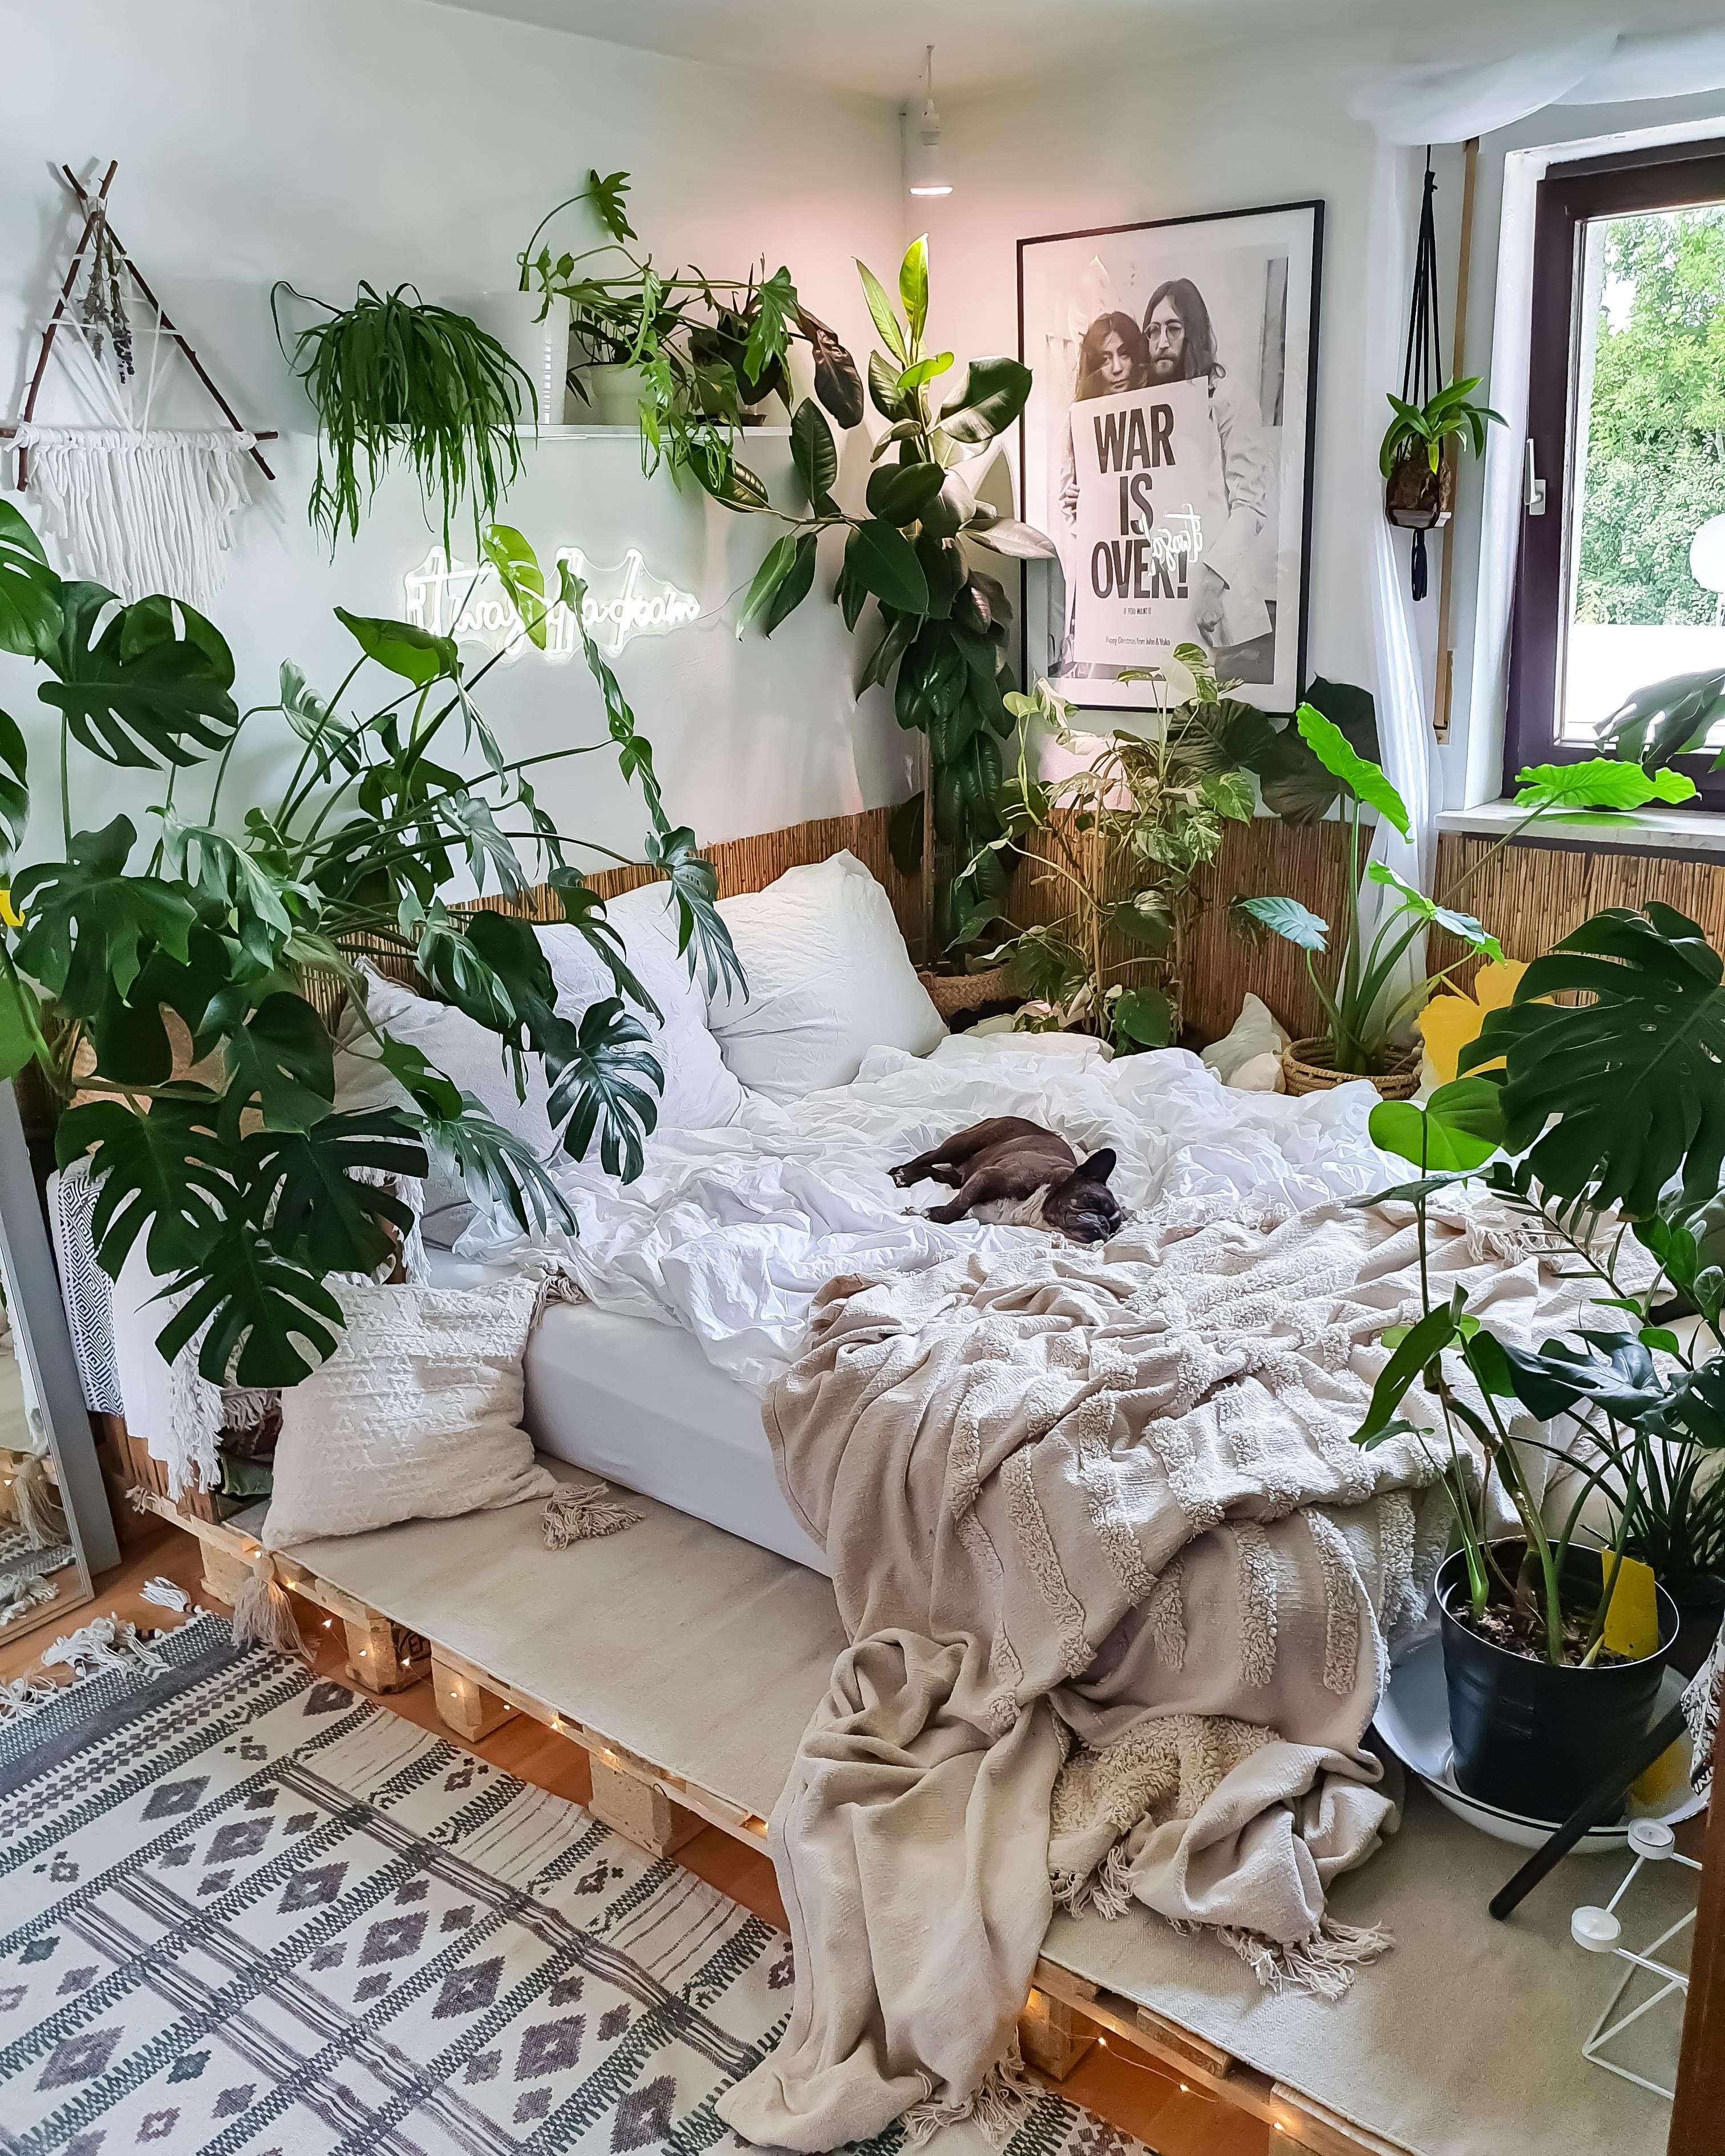 It was all a dream 💭 #Schlafzimmer #Pflanzen #boho #hippie #hygge #Paletten #Poster 